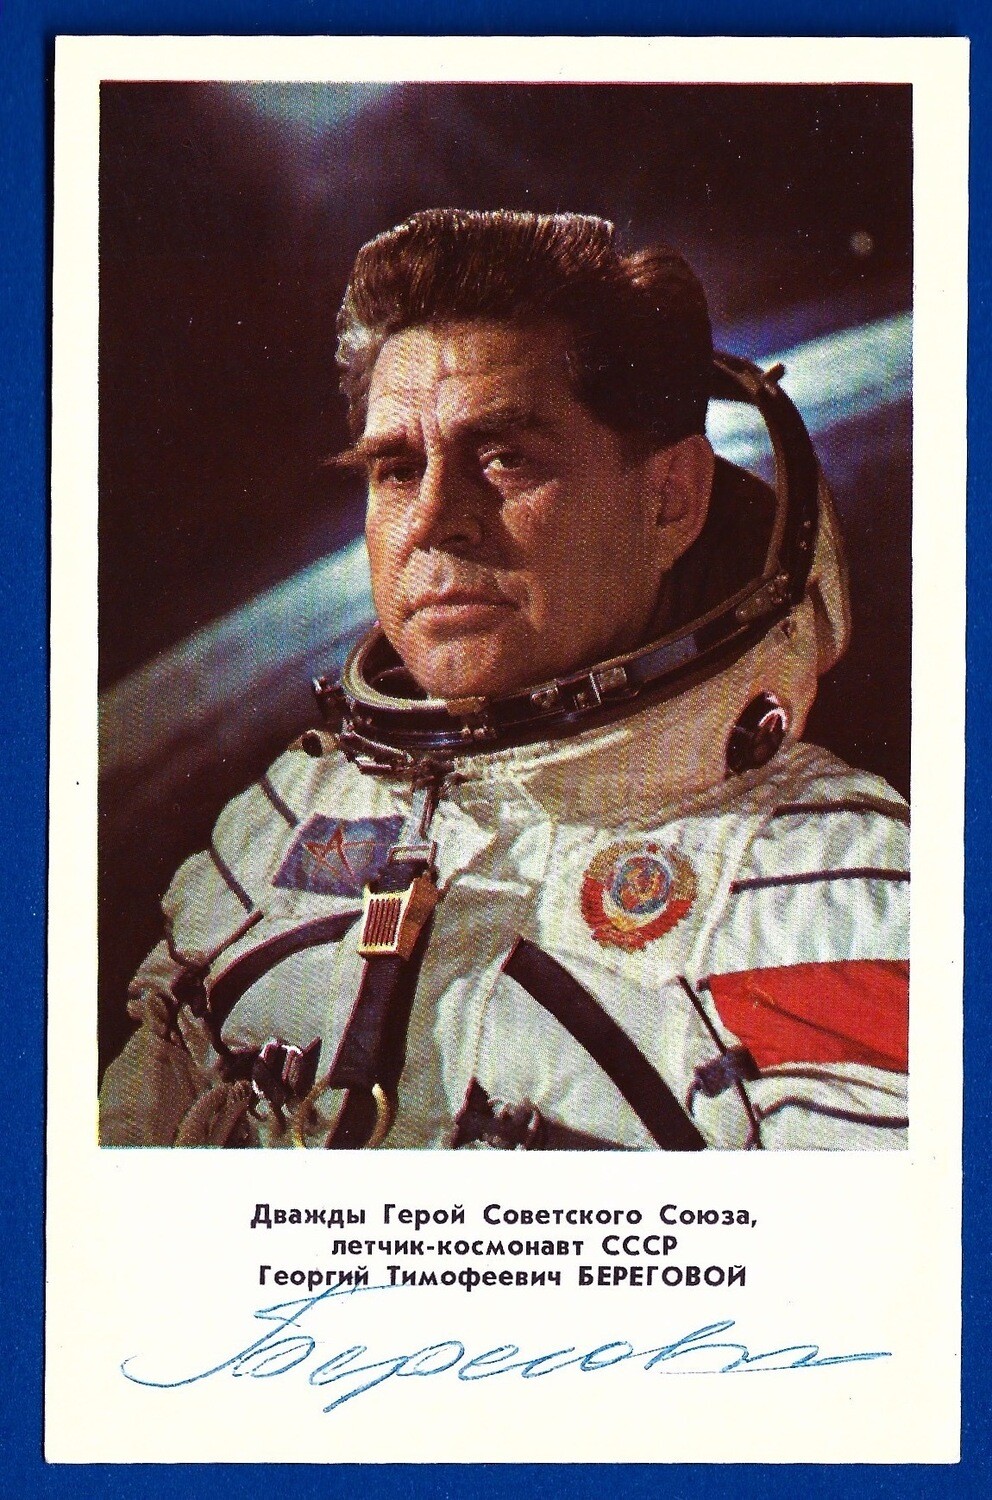 Georgy Beregovoy Soviet cosmonaut signed picture